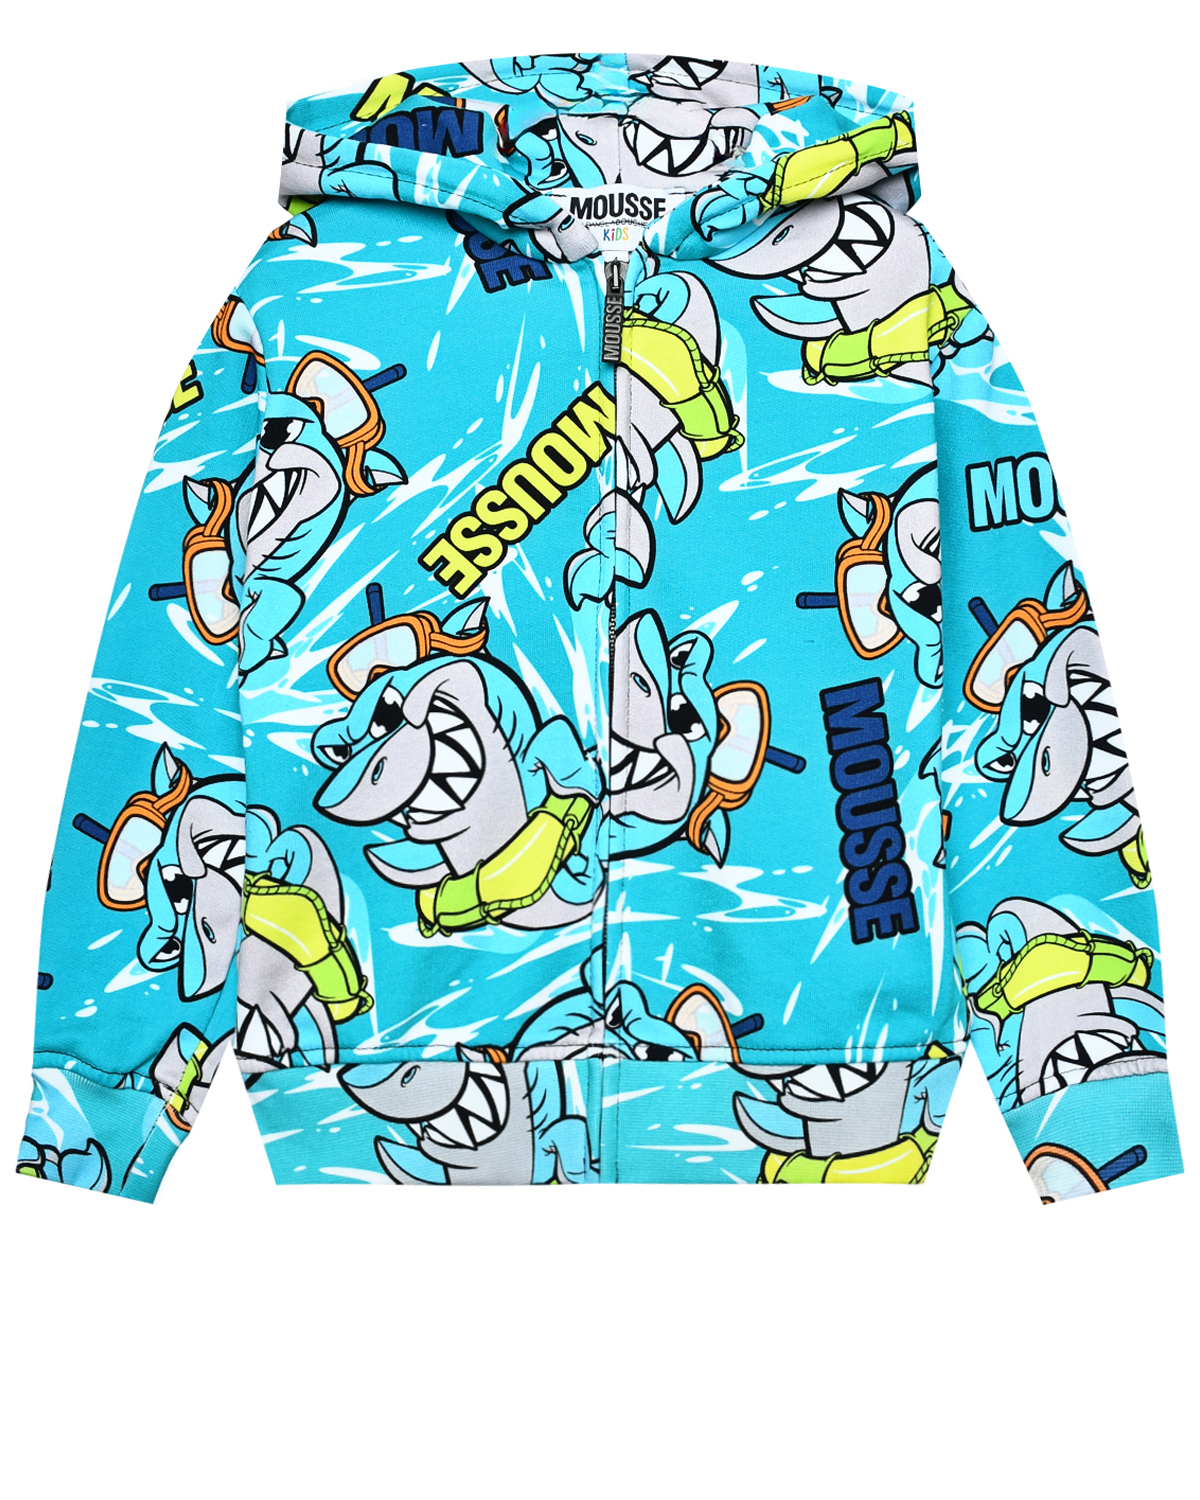 Куртка спортивная, принт сплошные акулы Mousse kids, размер 92, цвет нет цвета